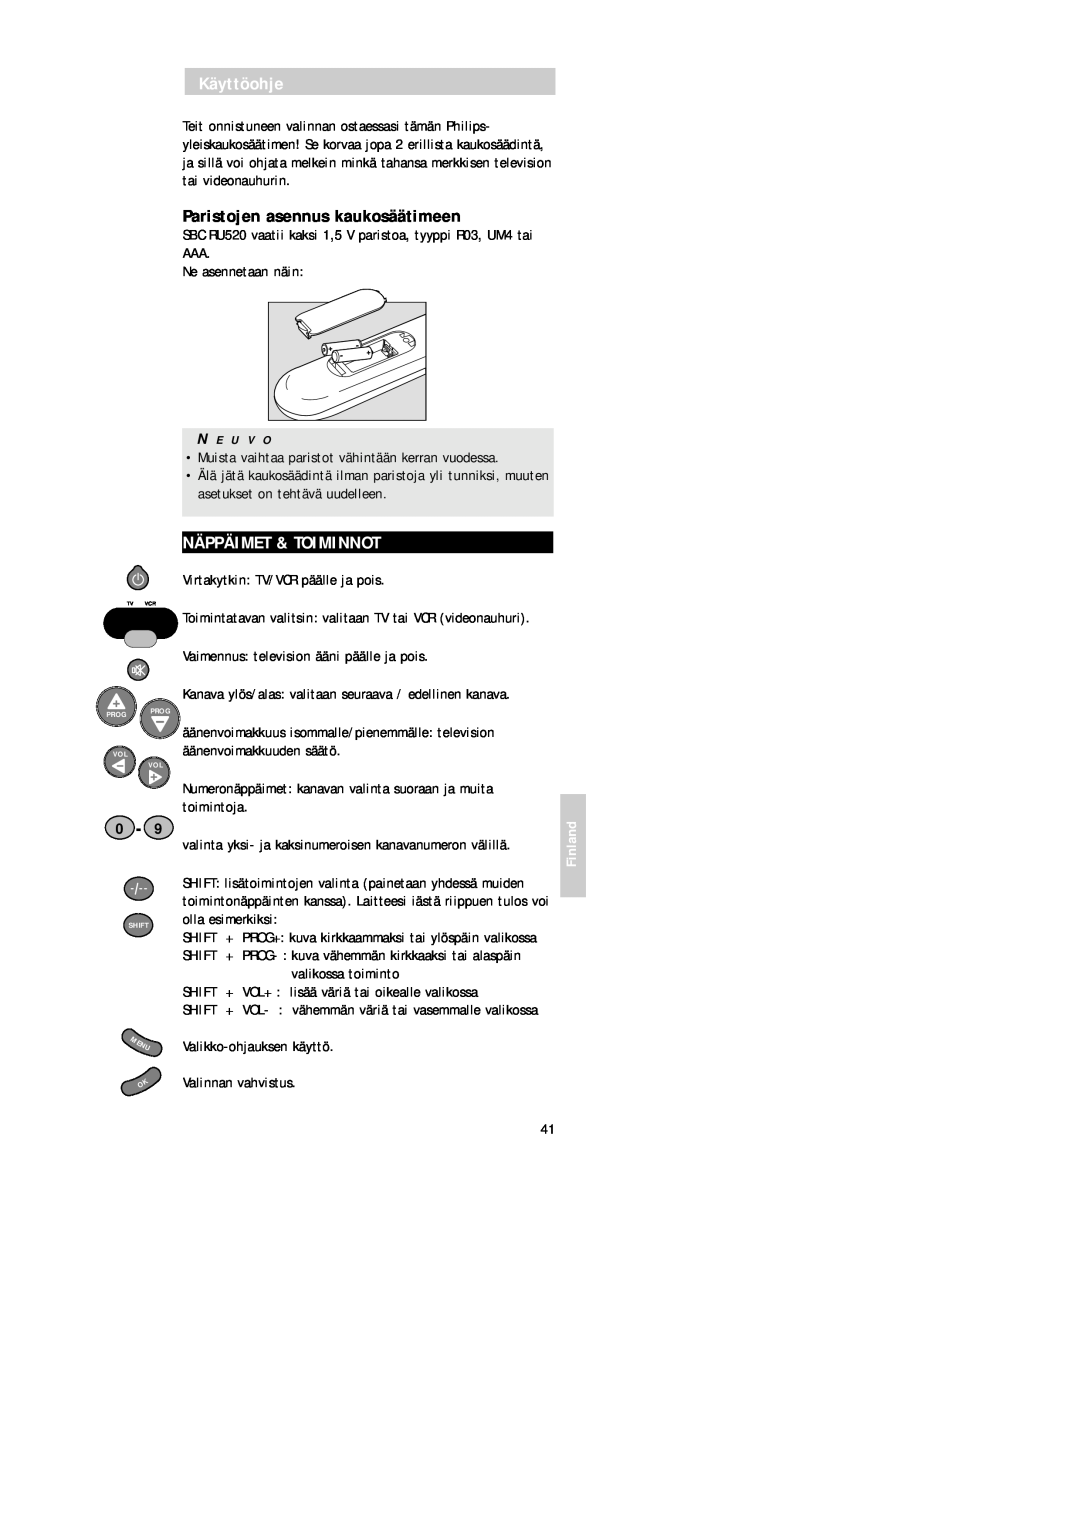 Philips SBC RU 520 manual Käyttöohje, Paristojen asennus kaukosäätimeen, Näppäimet & Toiminnot, Finland, Valinnan vahvistus 